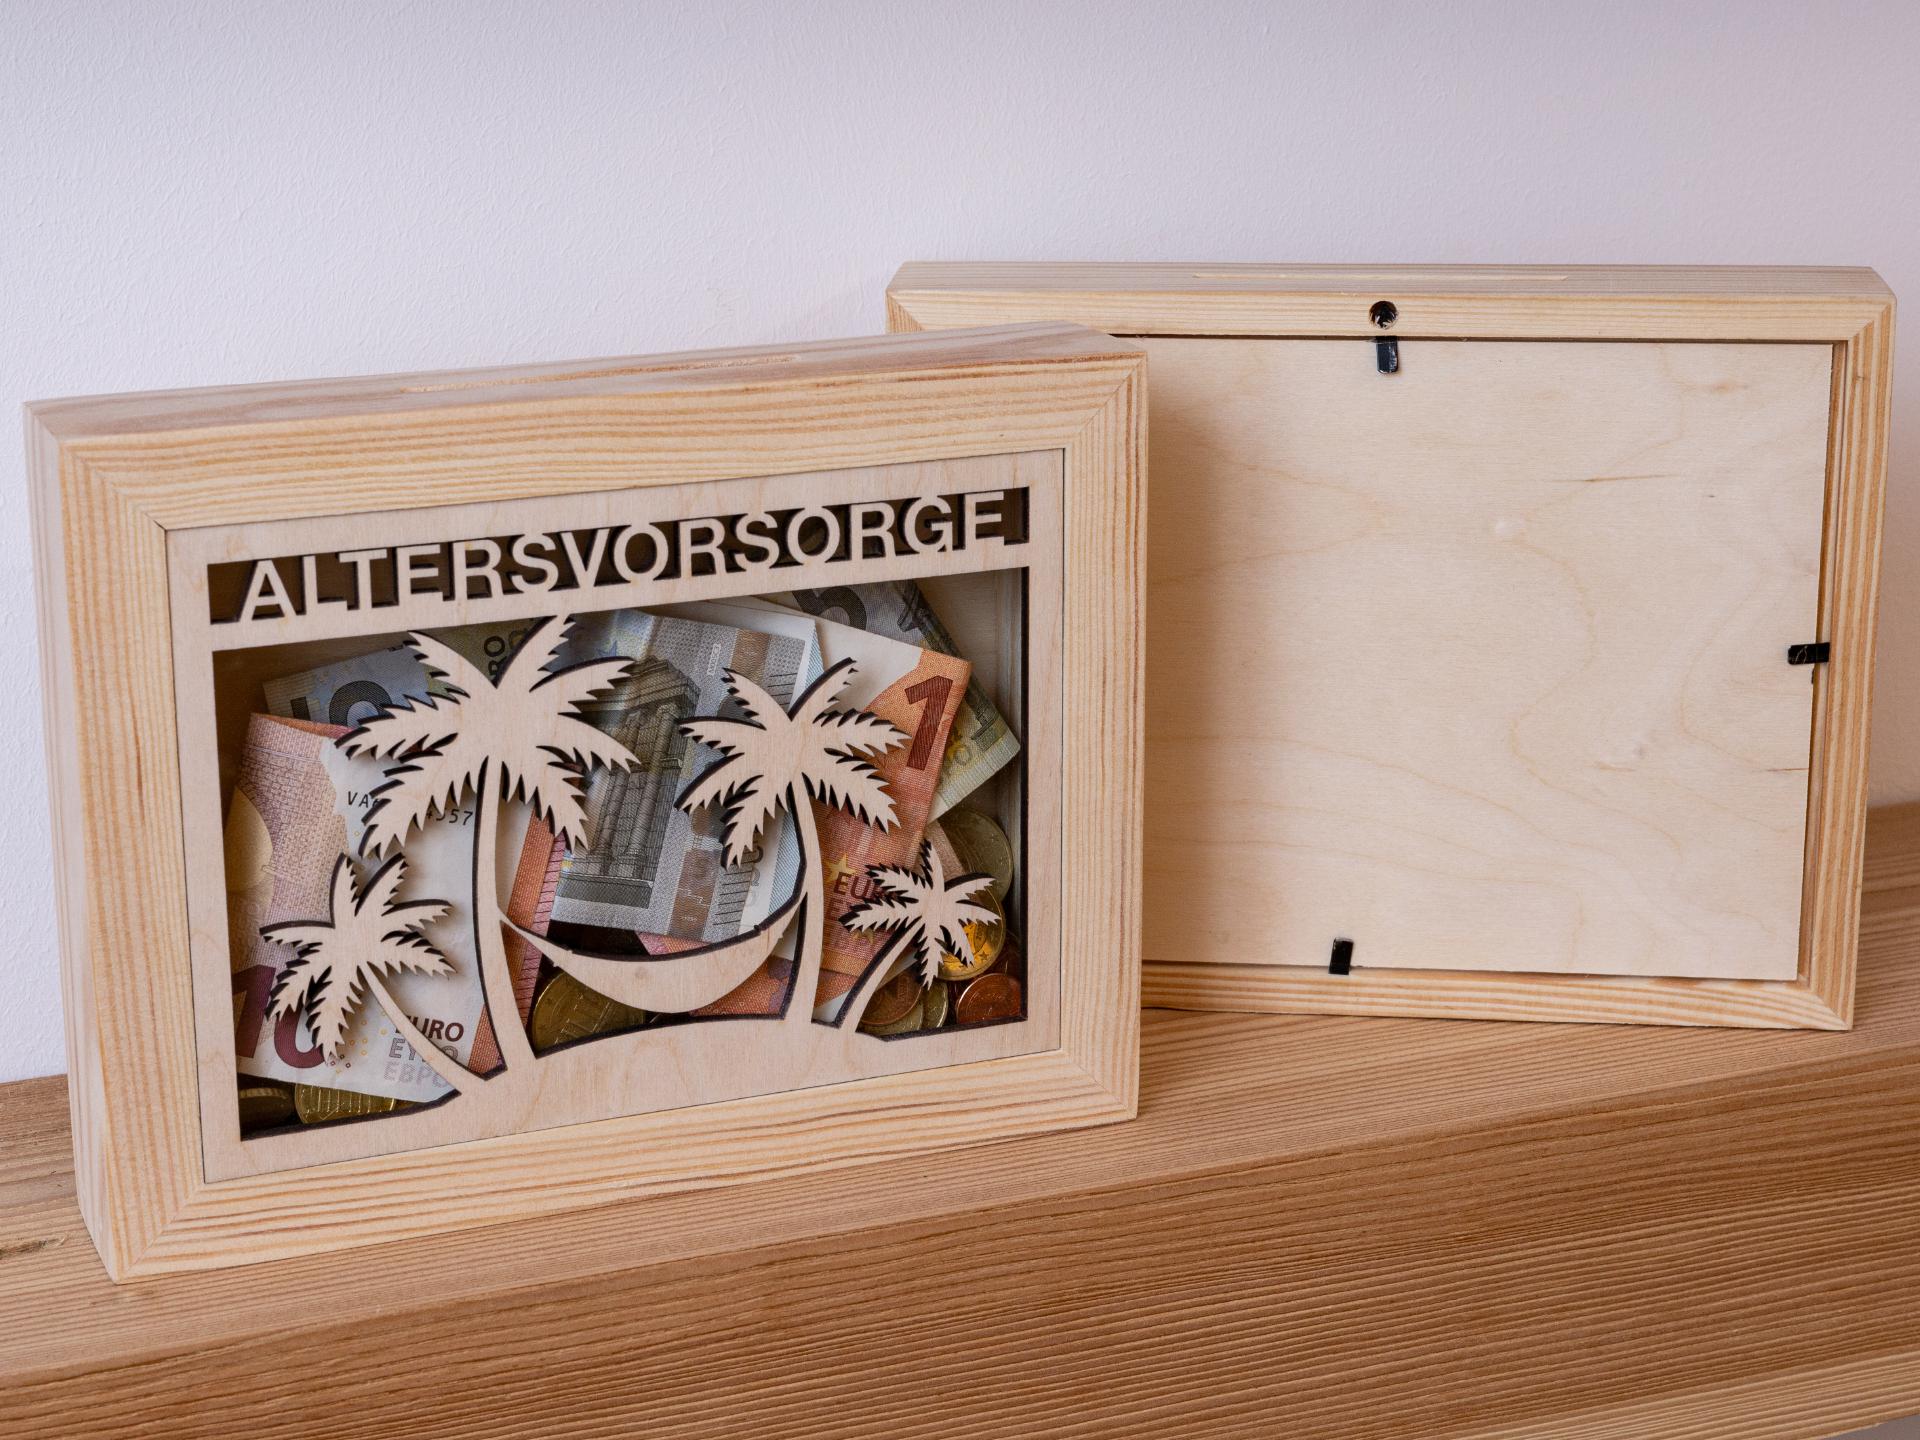 Holz Spardose Bilderrahmen mit Glas Einsatz Sparkasse mit Altersvorsorge Motiv fuer eine sichere Zukunft